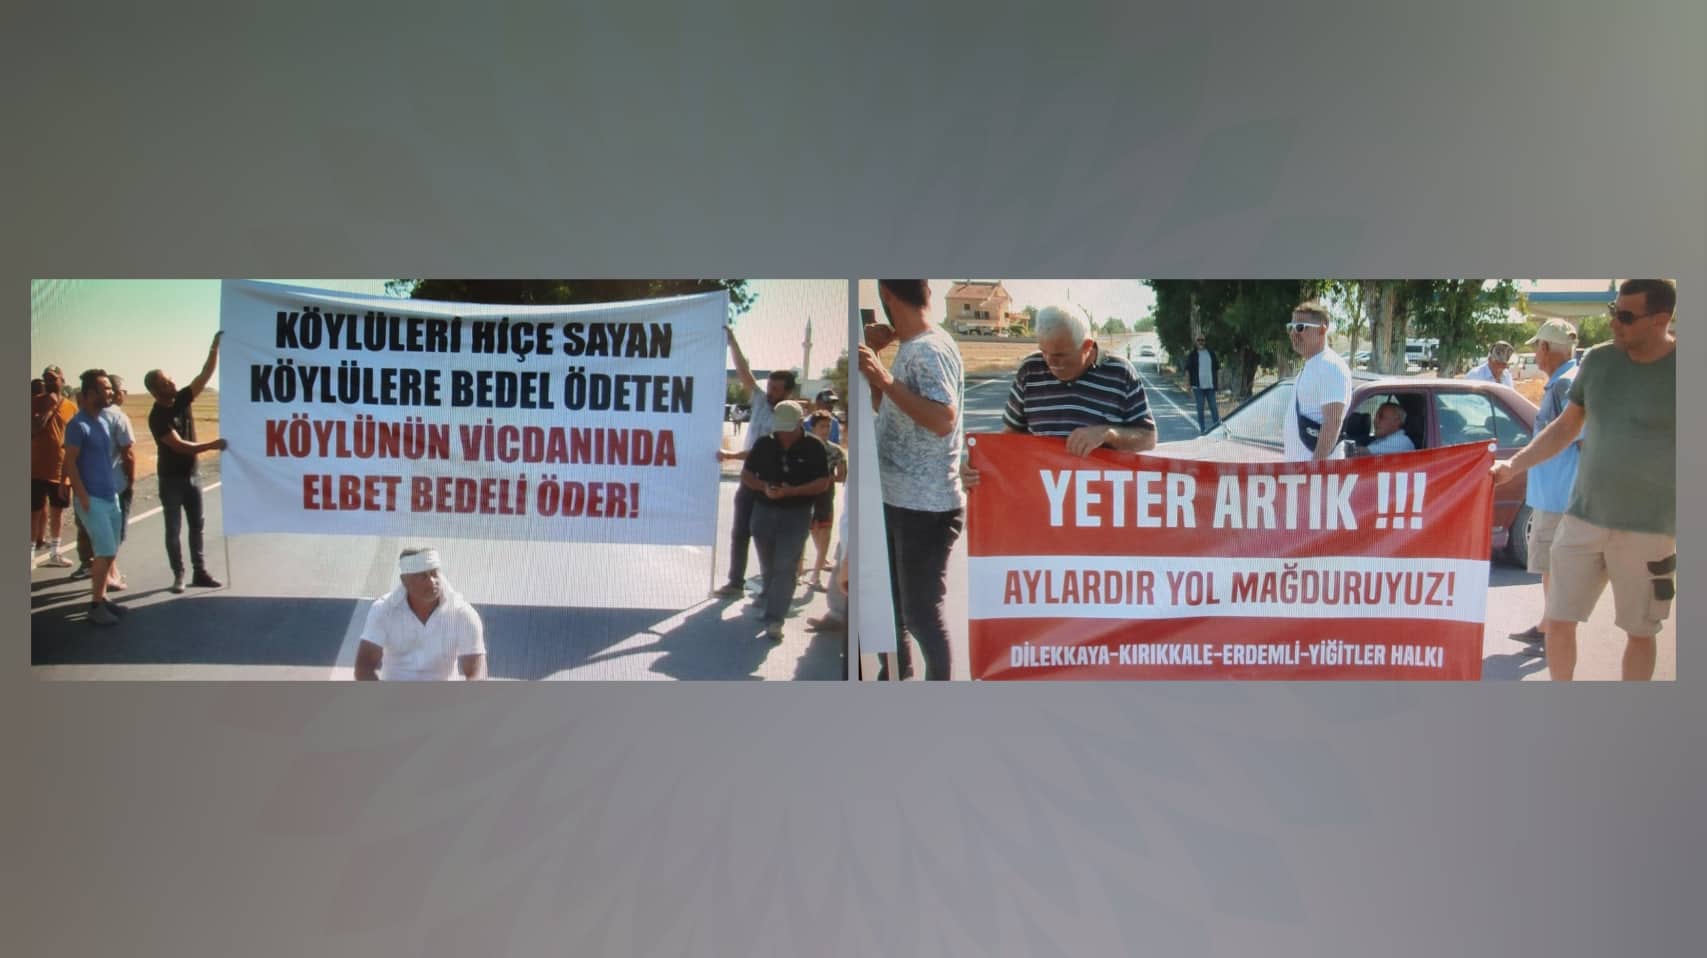 Dilekkaya, Kırıkkale, Erdemli ve Yiğitler halkı eylem yaptı